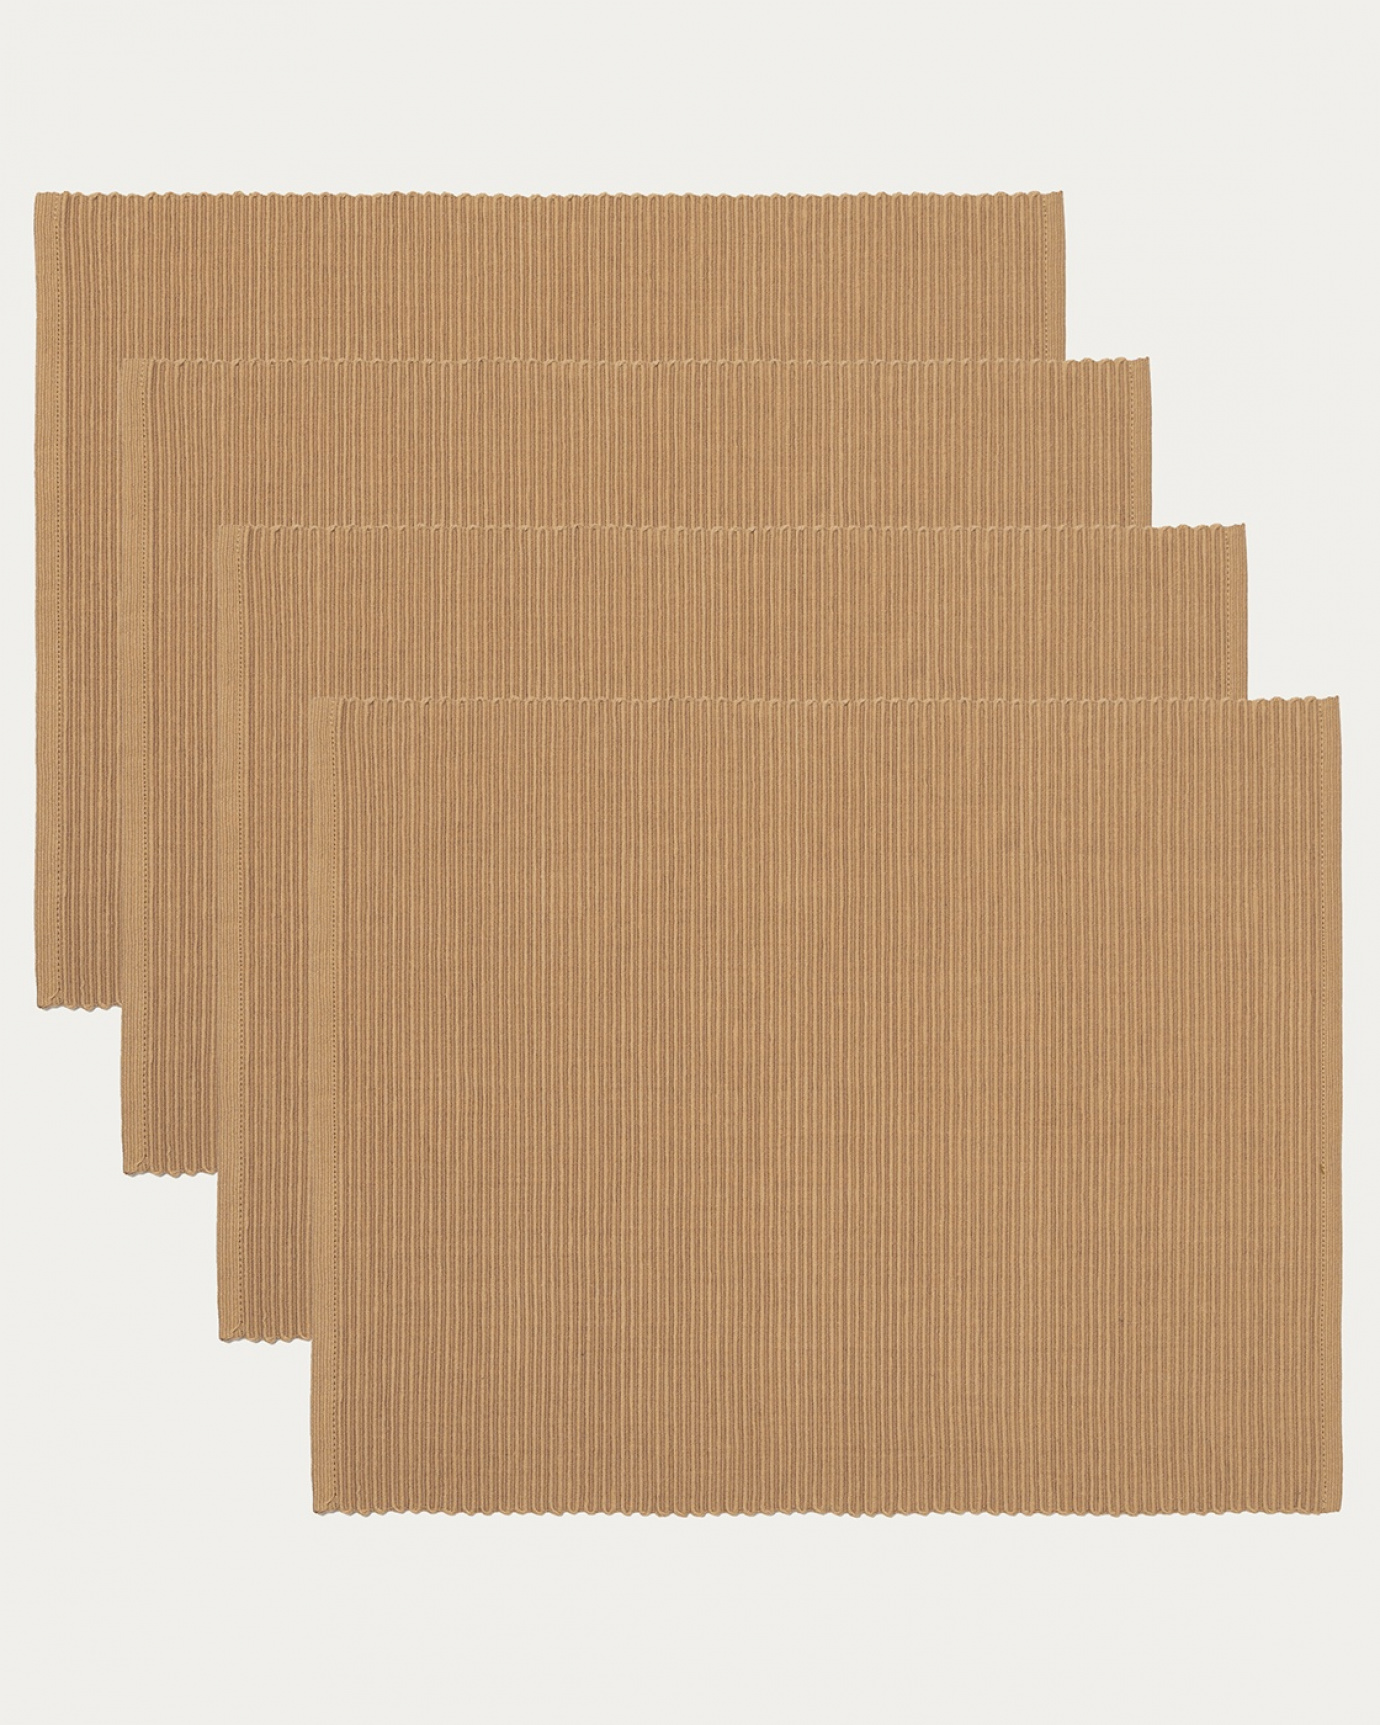 Immagine prodotto marrone cammello tovaglietta UNI in morbido cotone a costine di qualità di LINUM DESIGN. Dimensioni 35x46 cm e venduto in 4-pezzi.